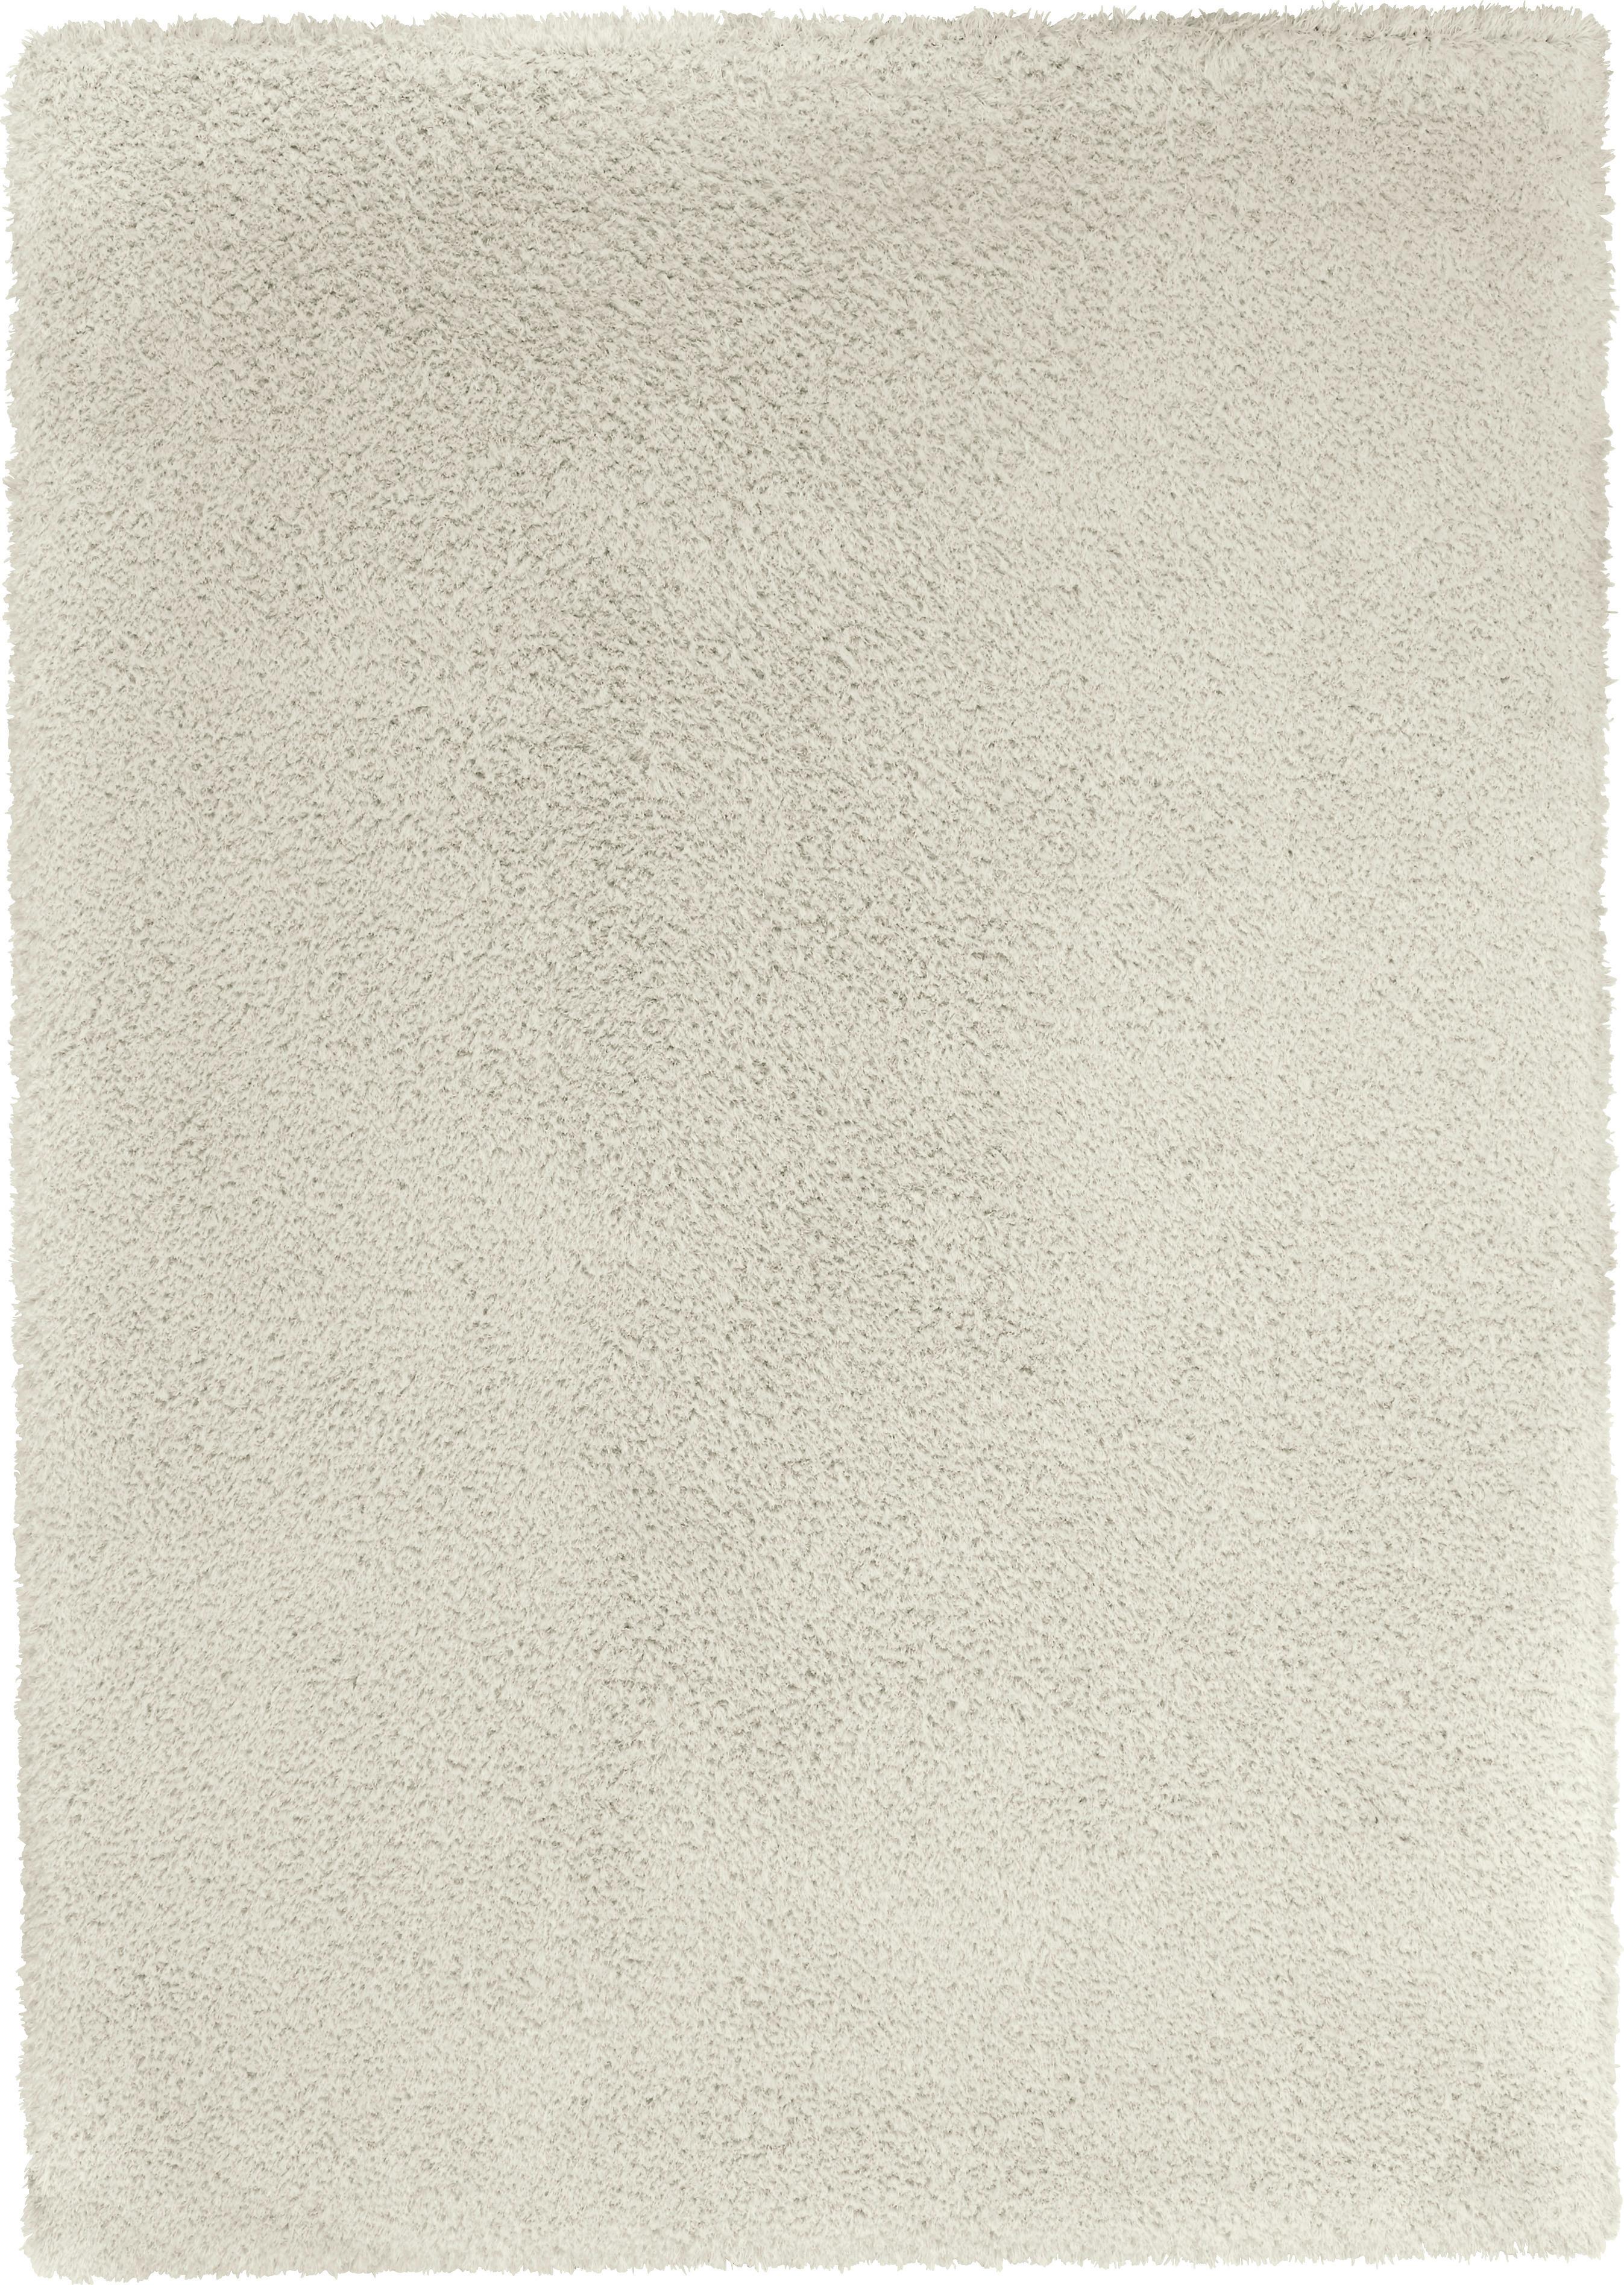 Čupavac Stefan 3 - bijela, Modern, tekstil (160/230cm) - Modern Living